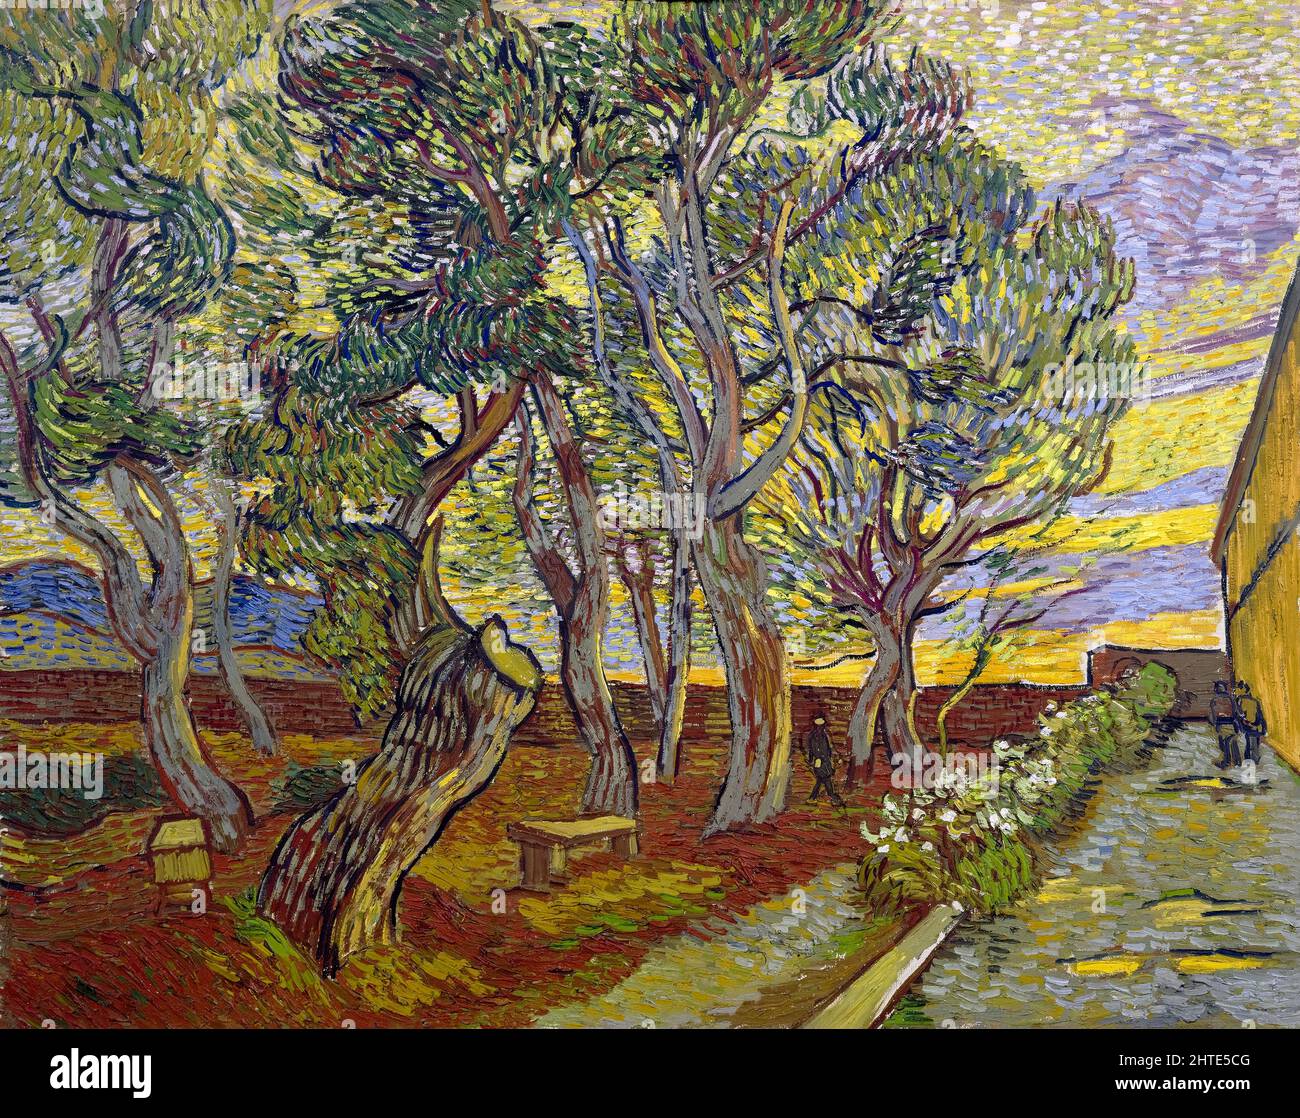 Vincent van Gogh, le jardin de l'hôpital Saint Paul, peinture, huile sur toile, 1889 Banque D'Images